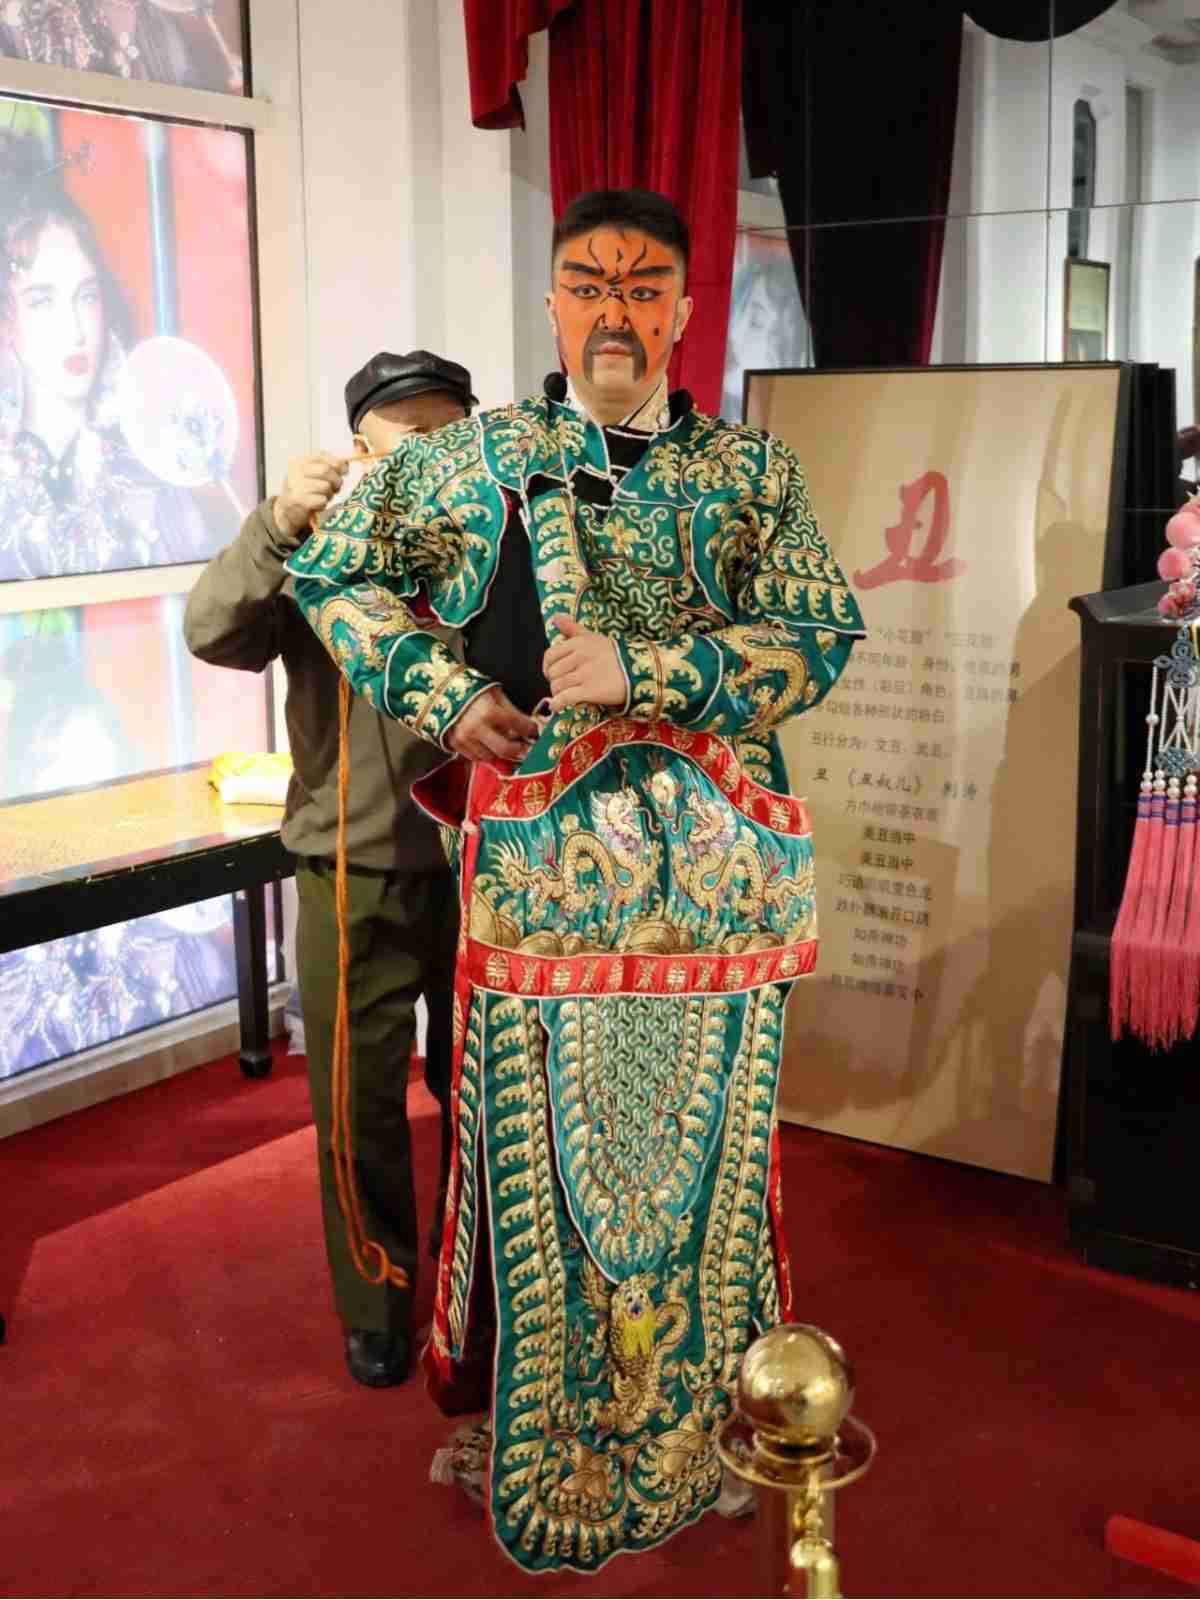 Peking opera performer getting dressed